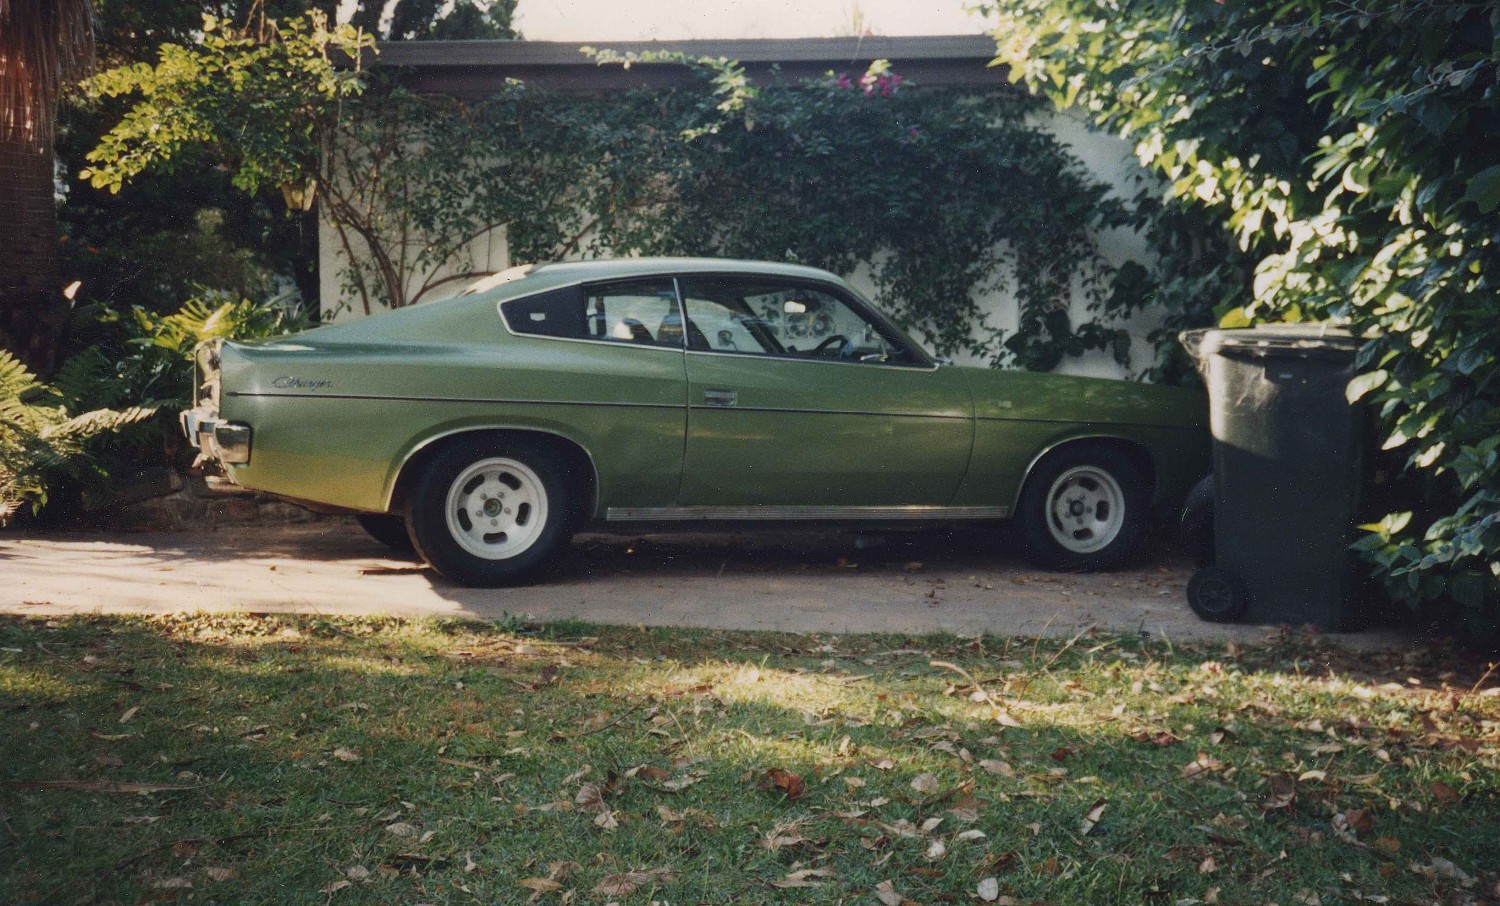 1973 Chrysler Valiant Charger